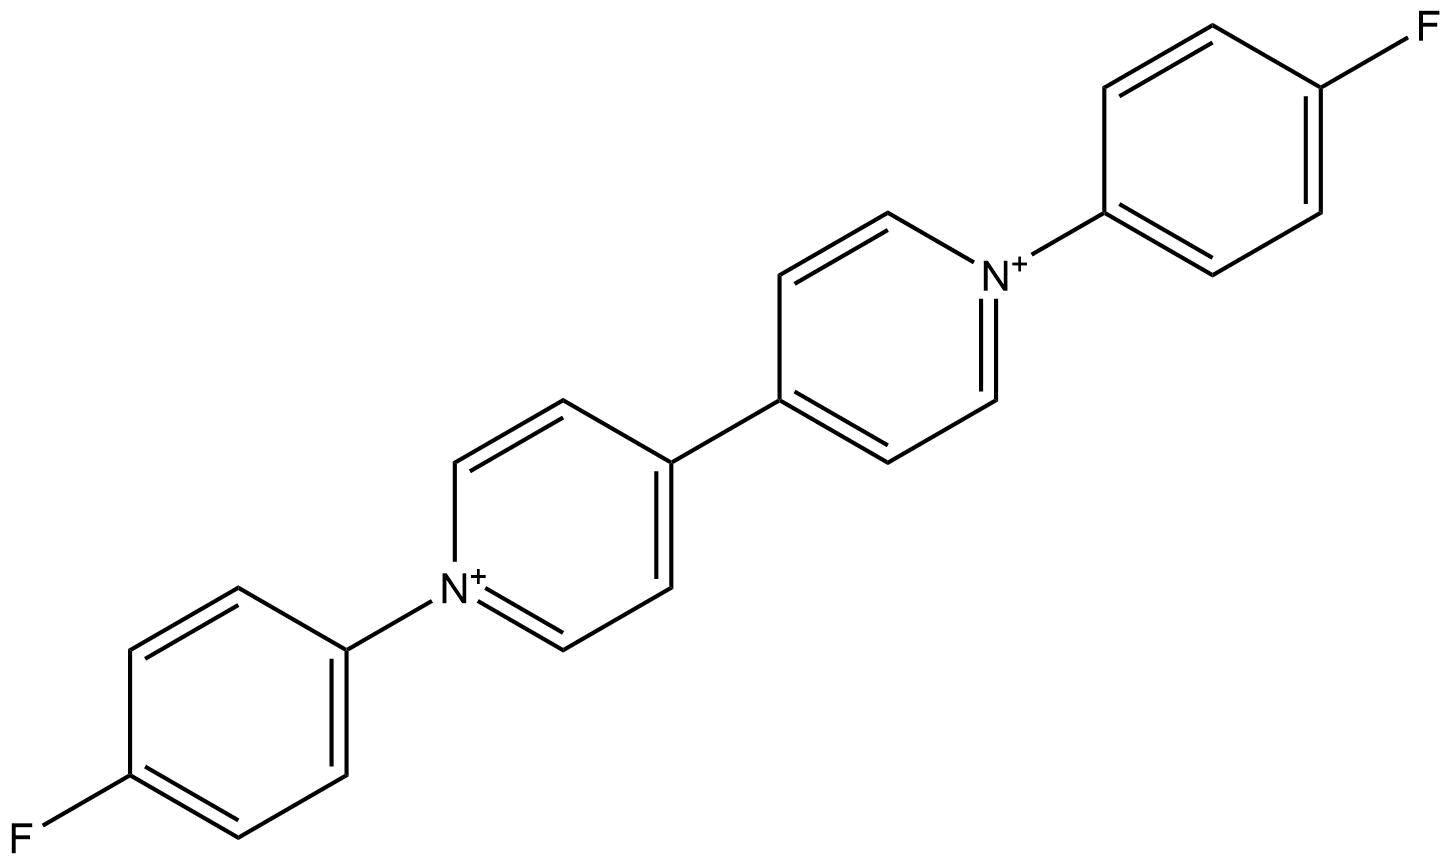 1 1' bis%284 fluorophenyl%29  4 4' bipyridine  1 1' diium